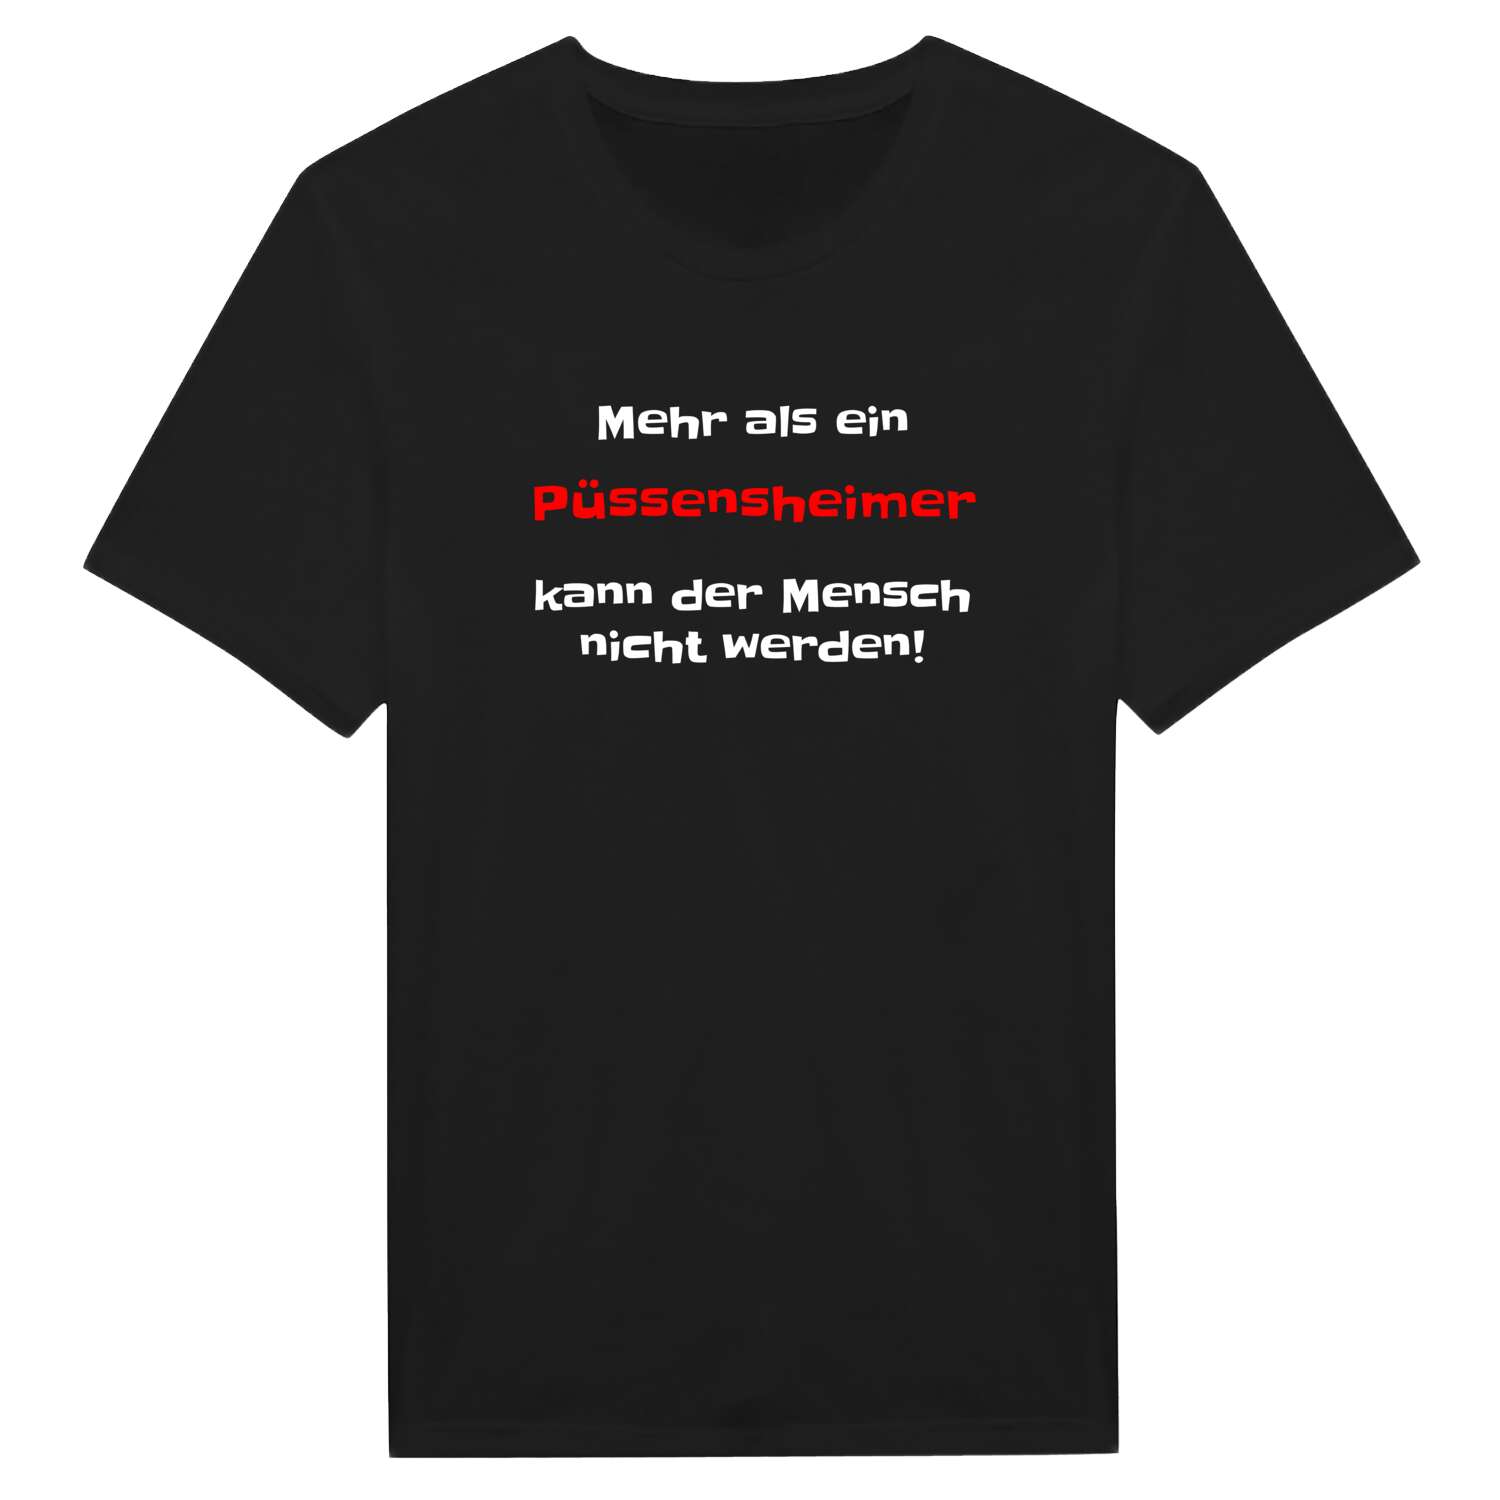 Püssensheim T-Shirt »Mehr als ein«